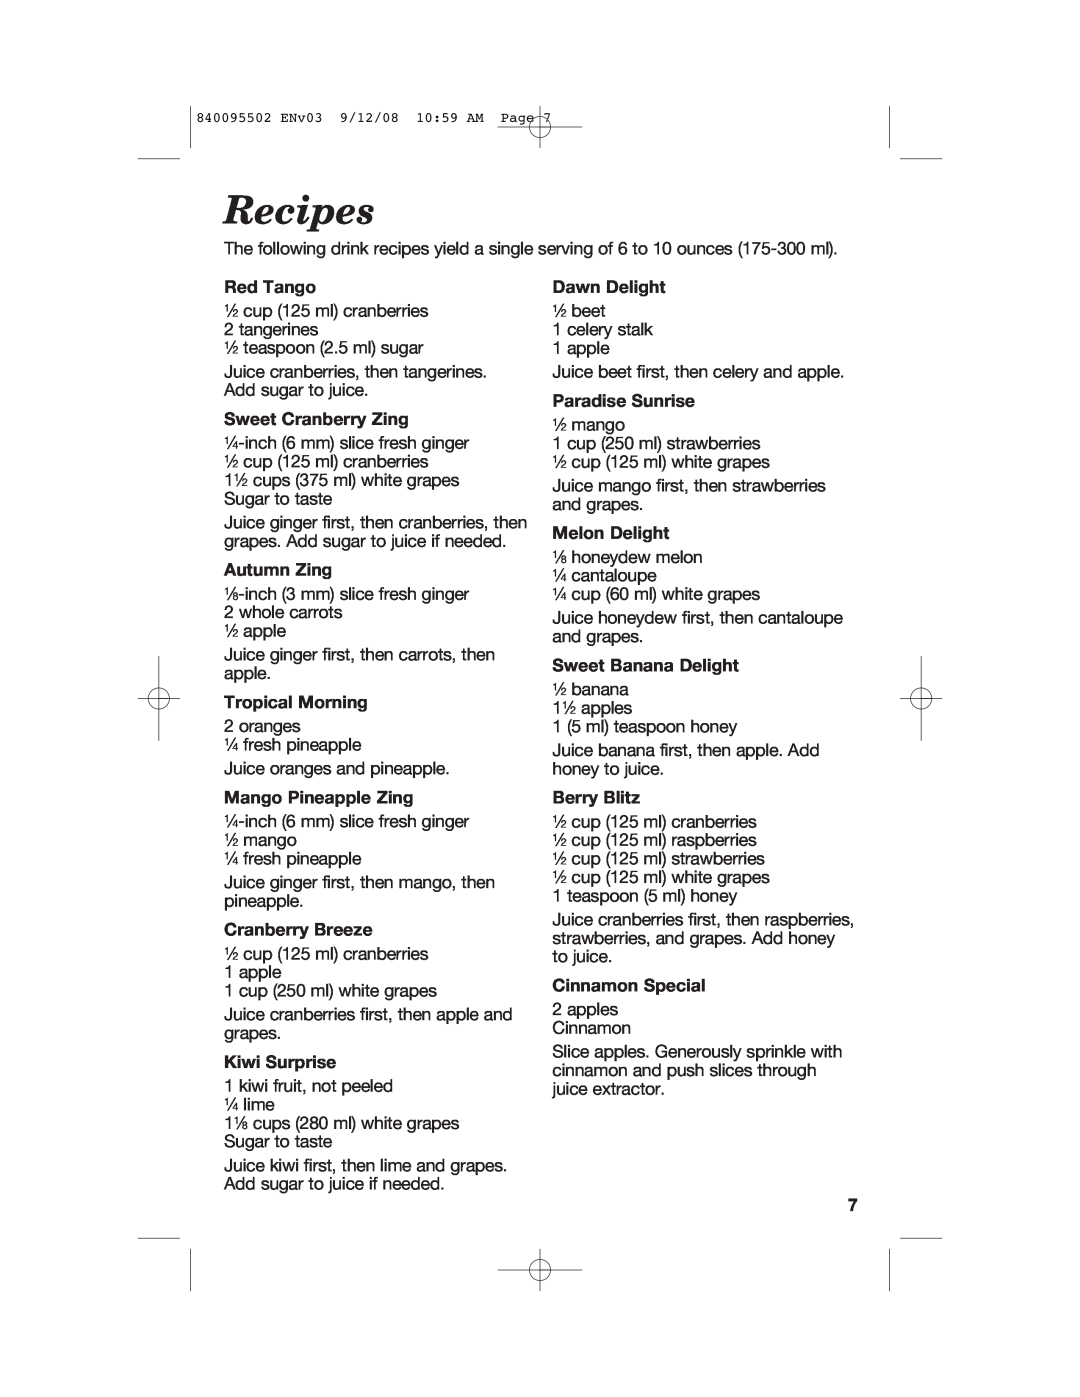 Hamilton Beach 67801 manual Recipes 